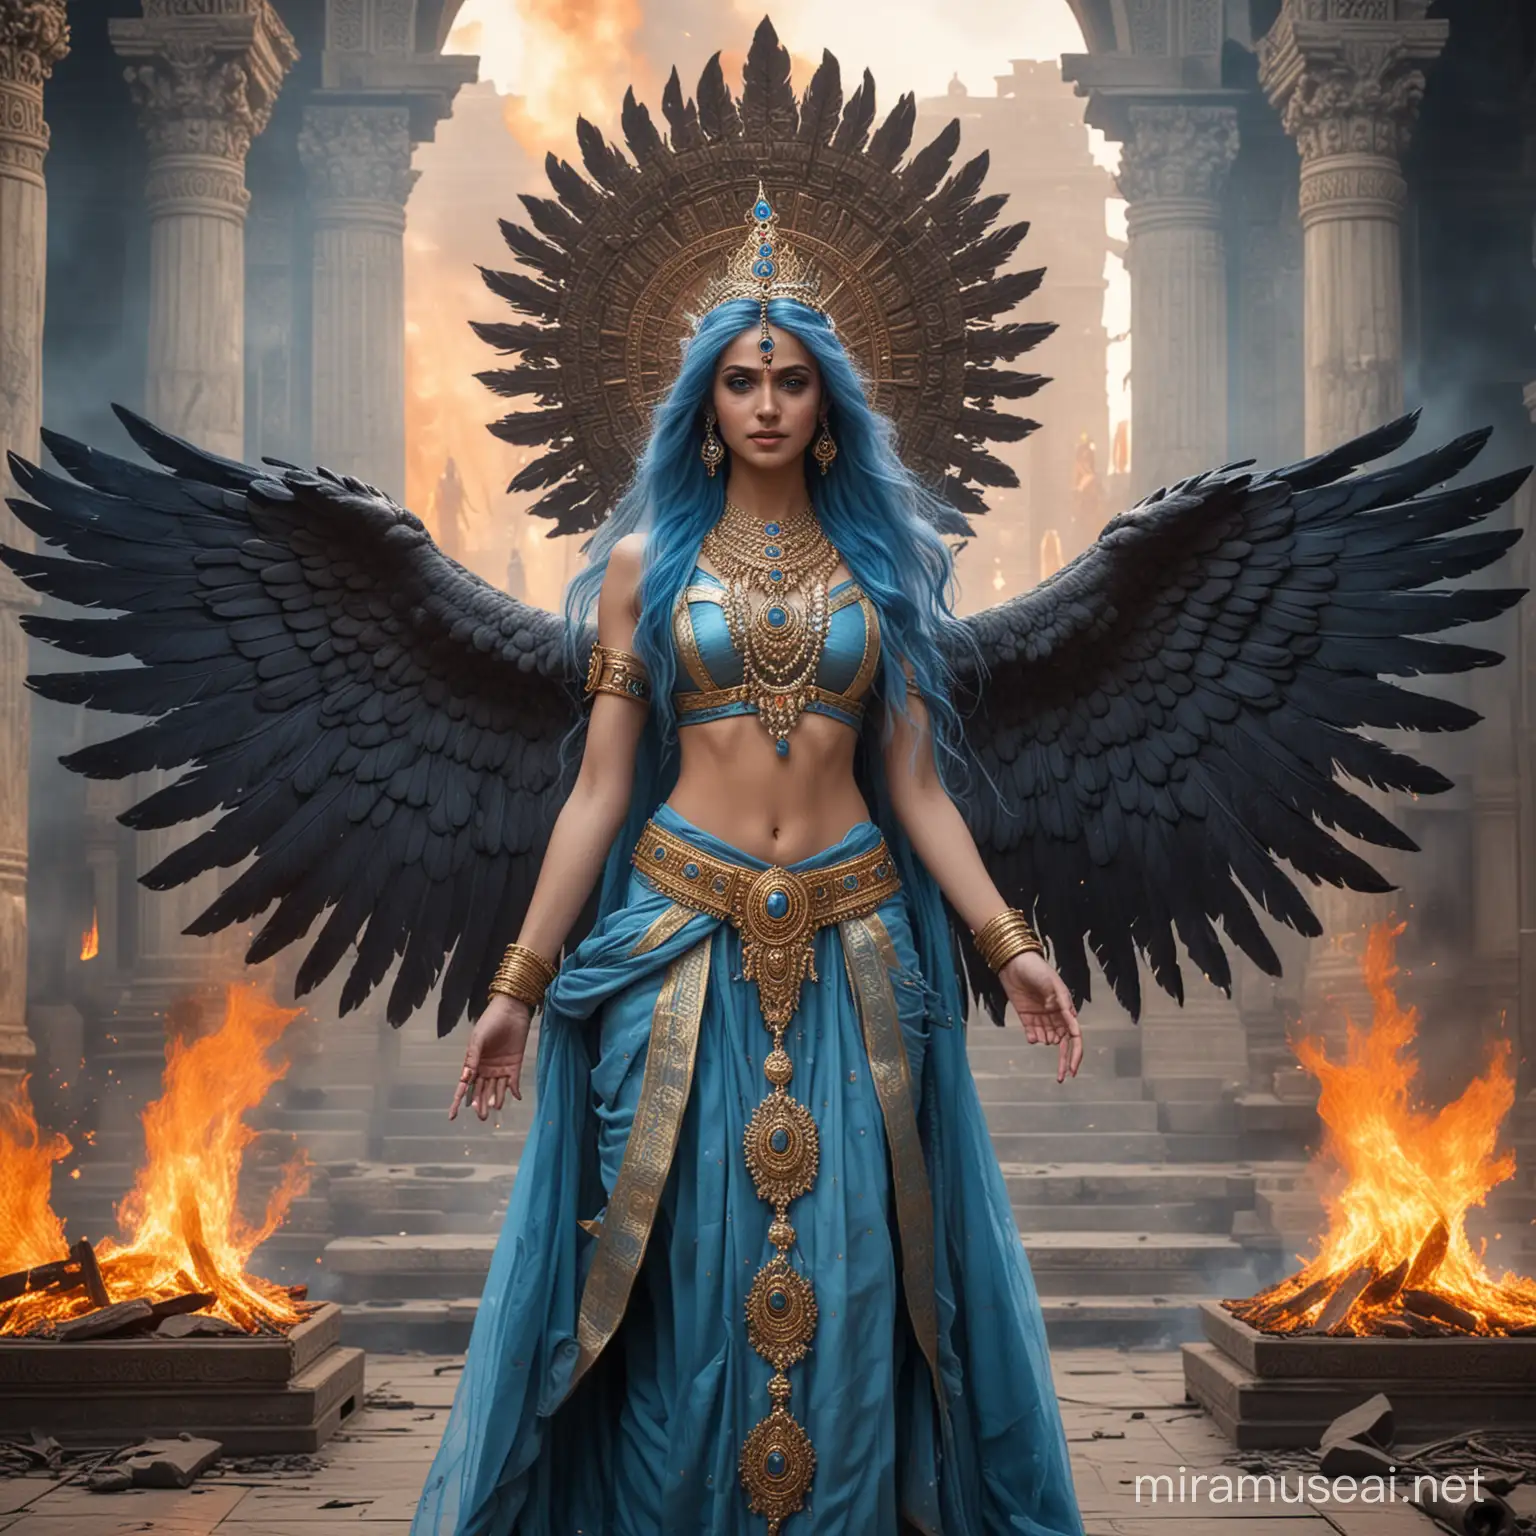 Diosa emperatriz hermosa joven de cabellos azules largos y ojos azules vestida como Diosa emperatriz hindu en combate, con muchas alas grandes largas,  rodeada de fuego y poder ,de pie junto a un altar majestuosa. Sonrisa misteriosa y de fondo y alrededor diosas y dioses hindus adorandola  y de fondo un gigantesco palacio hindu tenebroso 